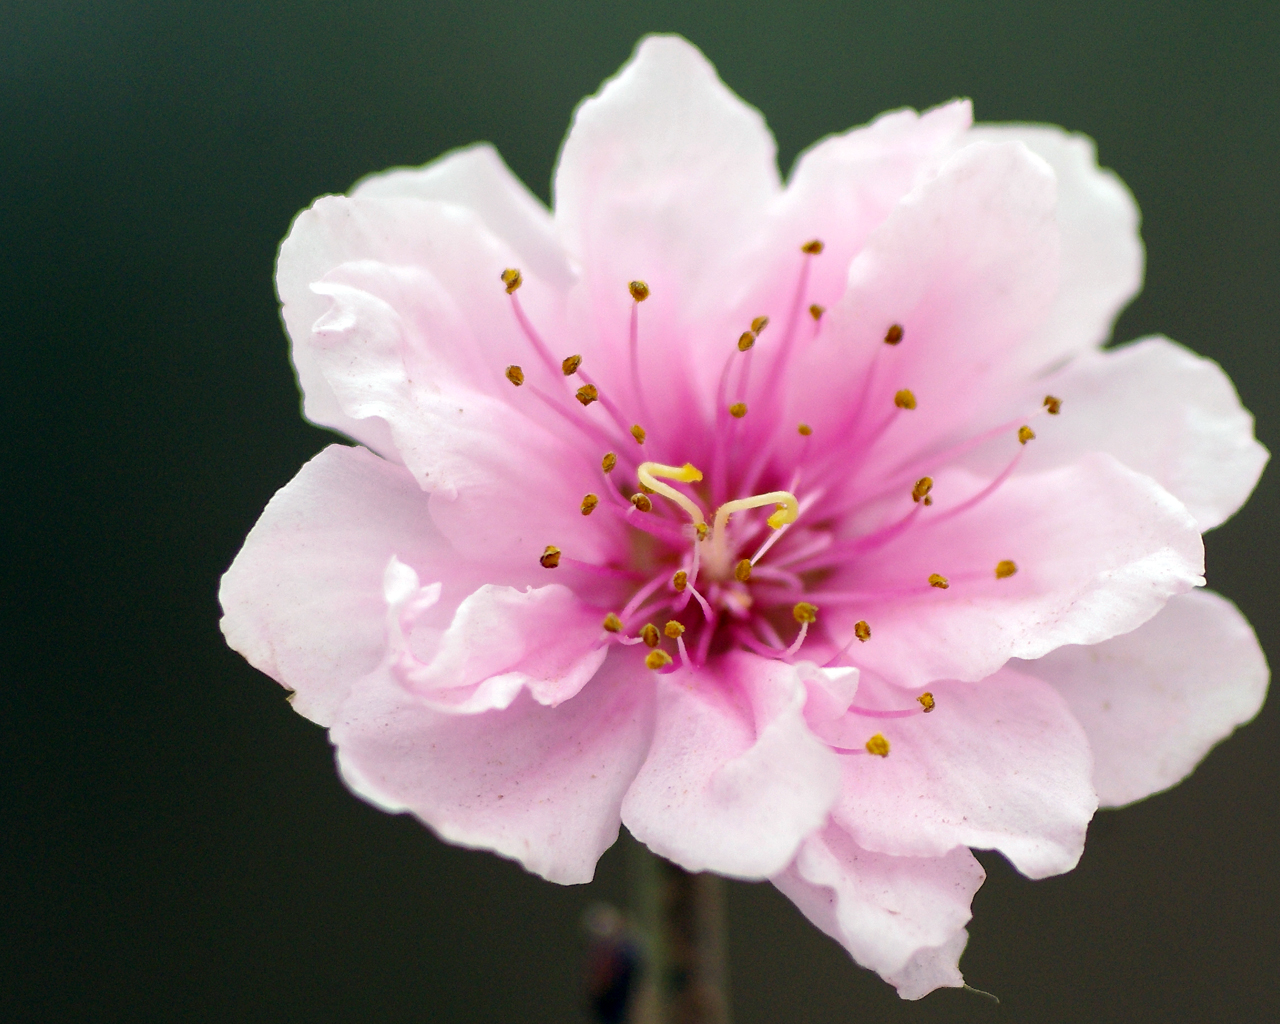 Gốc cây hoa đào tết là một biểu tượng vô cùng quan trọng trong đời sống văn hóa của người Việt Nam. Đôi lúc, một cái nhìn cũng đủ để chứng tỏ sức sống và sự đam mê của loài cây đang phát triển, cùng nhìn ngắm những gốc cây hoa đào tuyệt đẹp và cảm nhận sức sống mãnh liệt của chúng nhé!